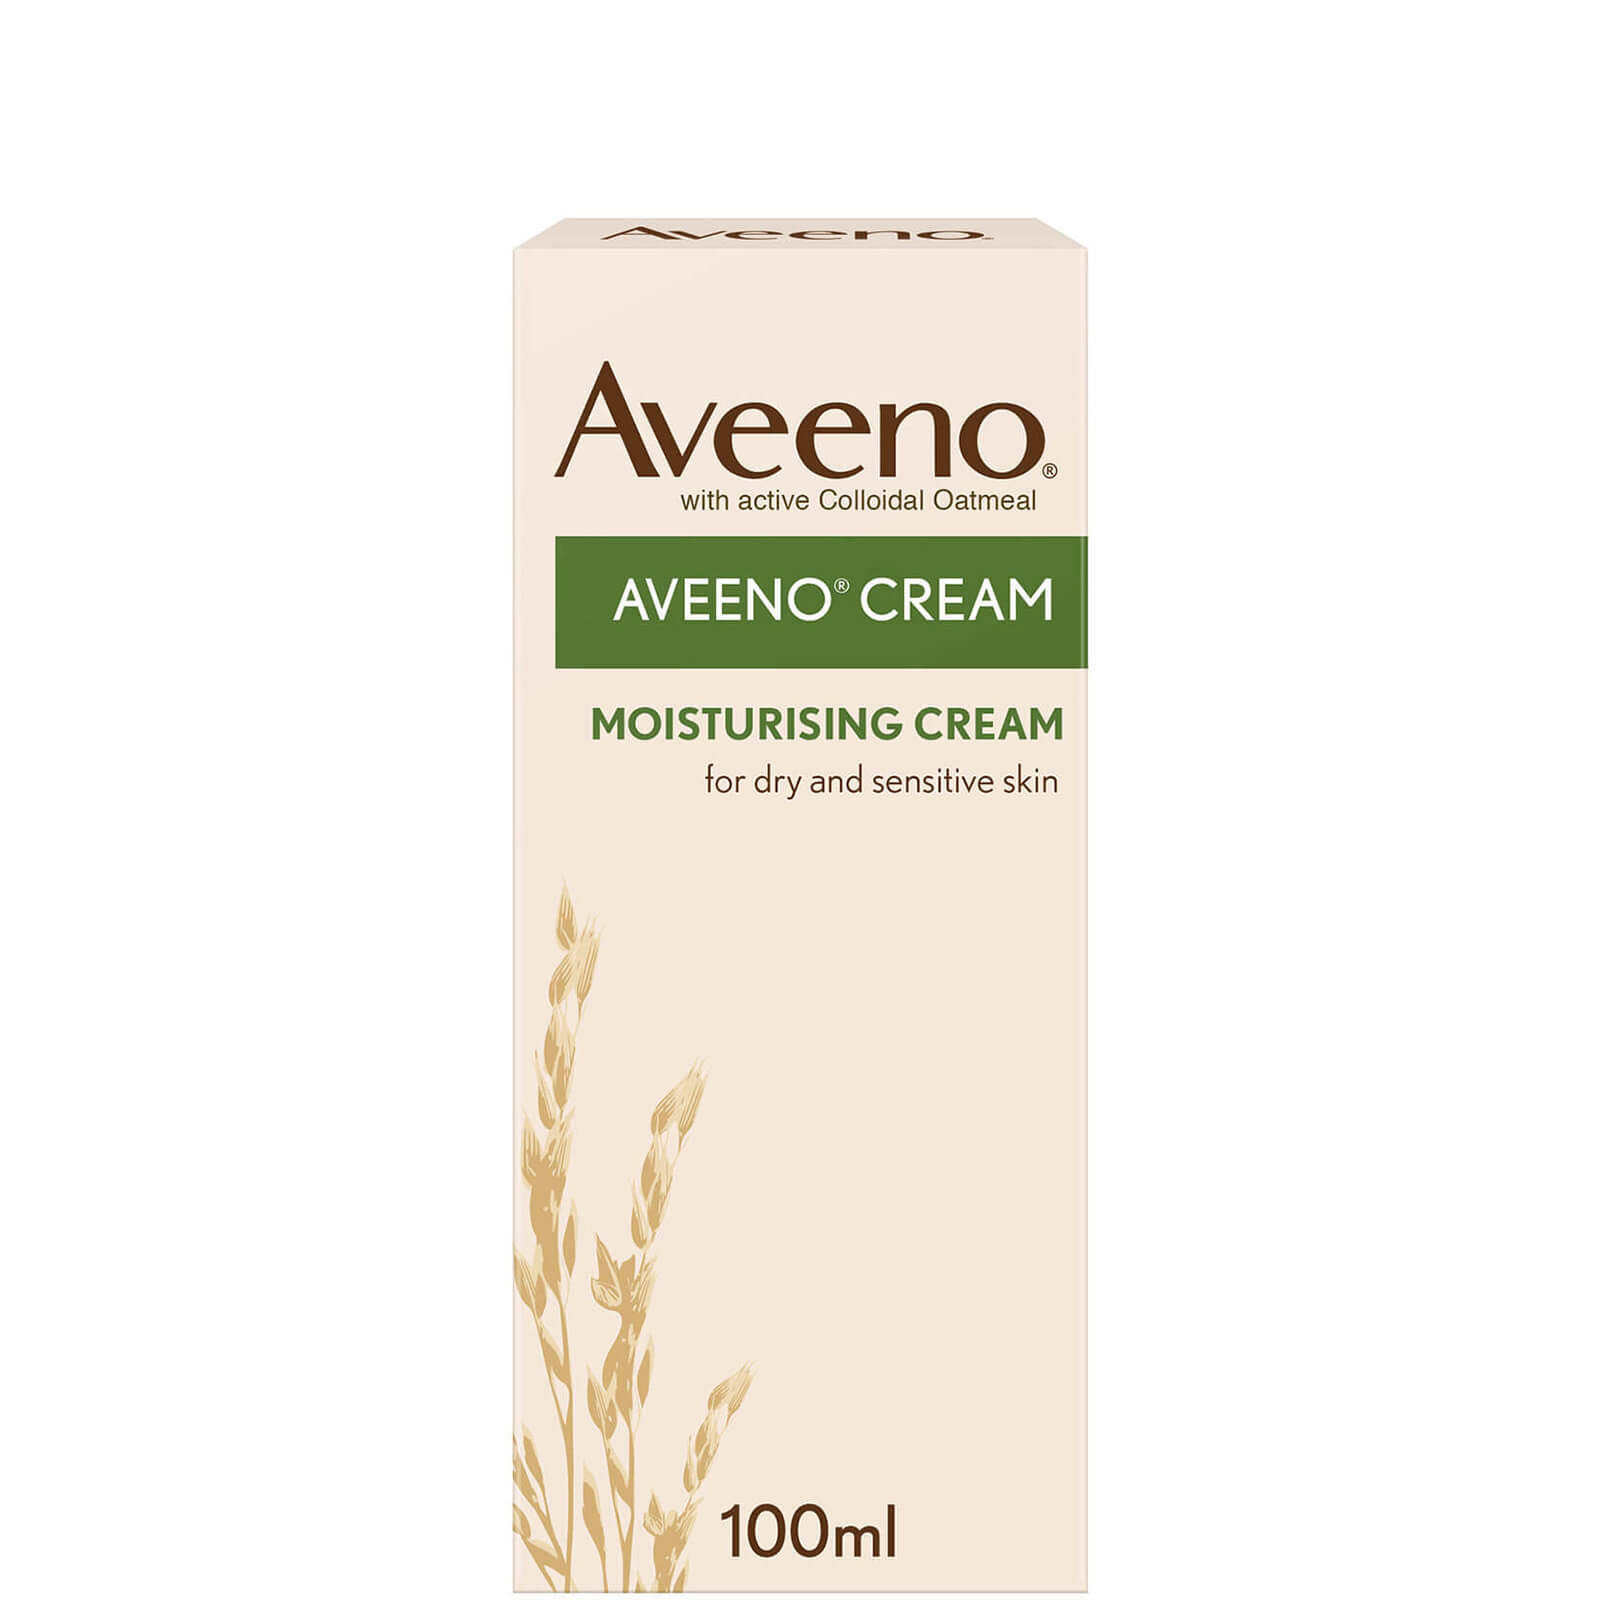 Aveeno Moisturising Cream - 100ml